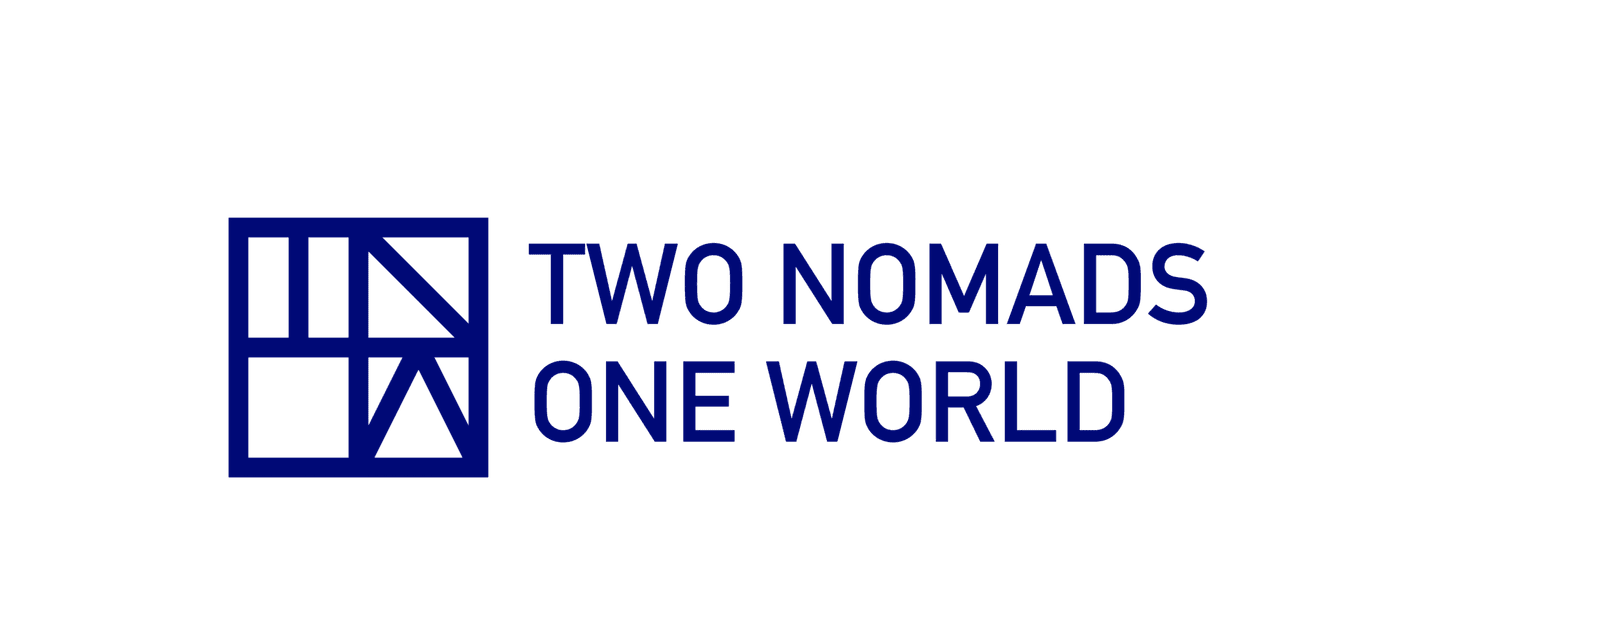 Two Nomads One World | Asia | Two Nomads One World